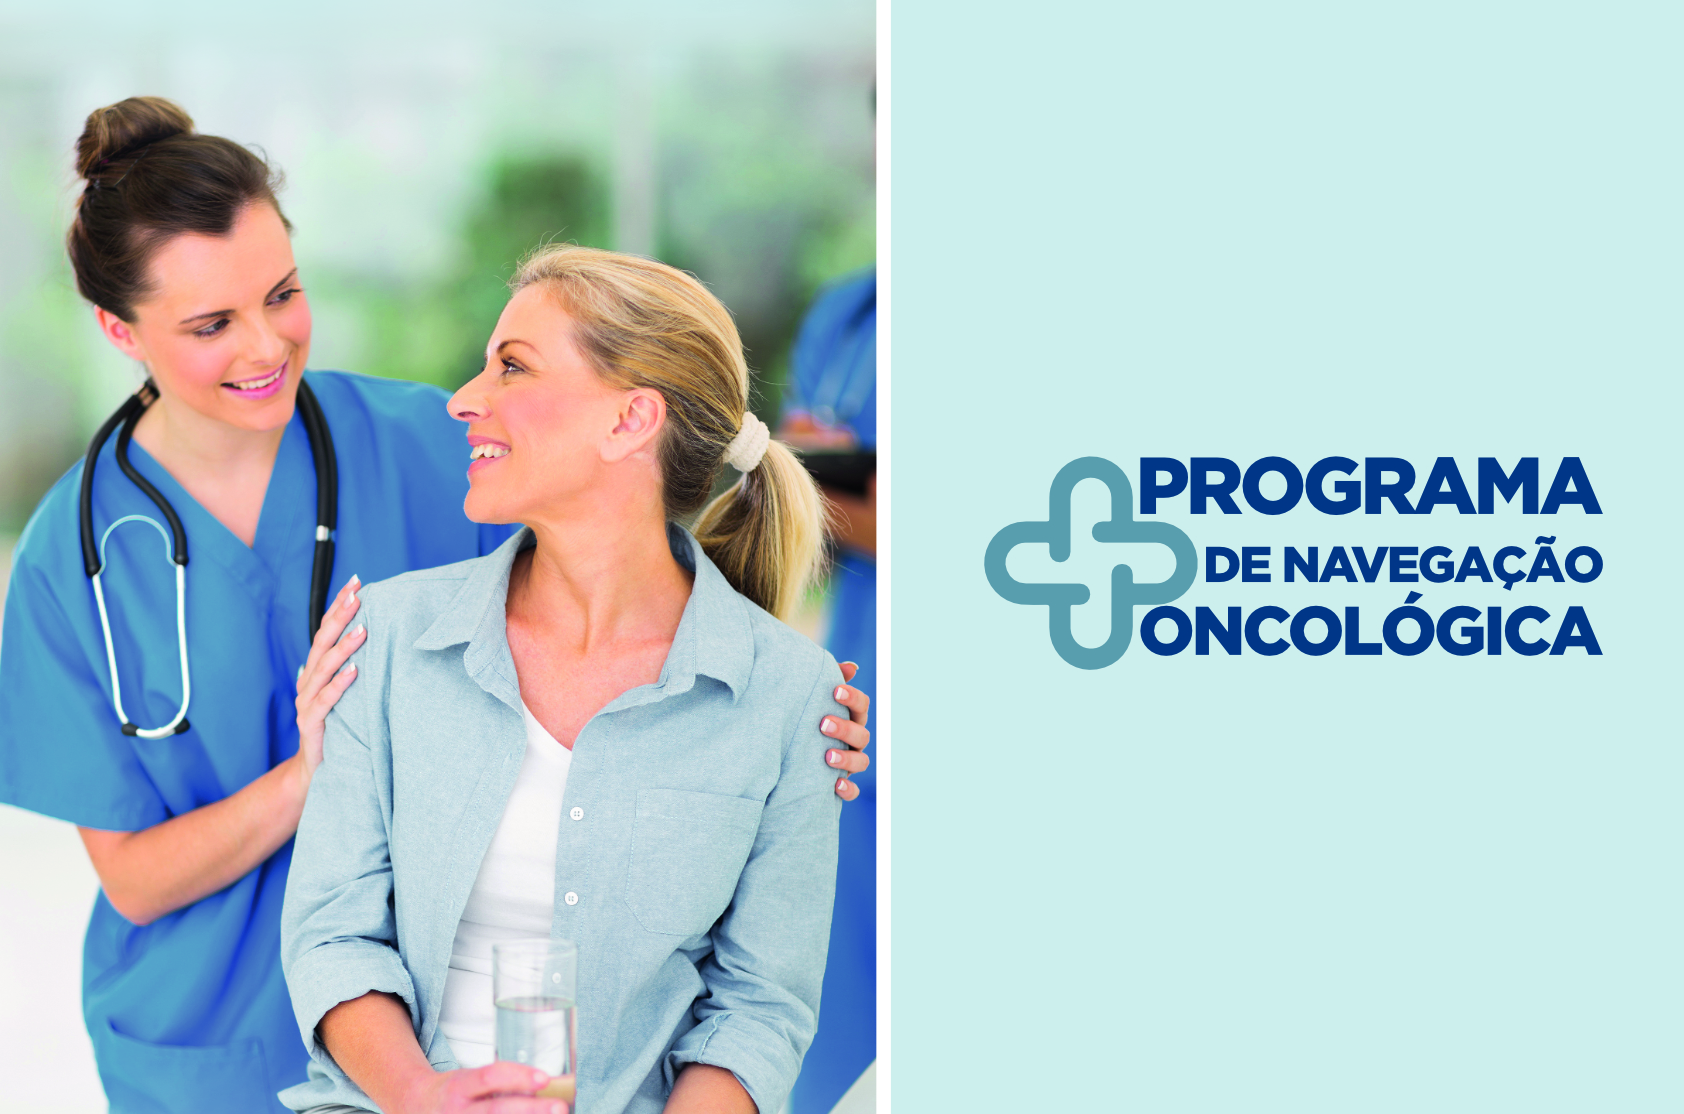 Conheça o nosso Programa de Navegação Oncológica